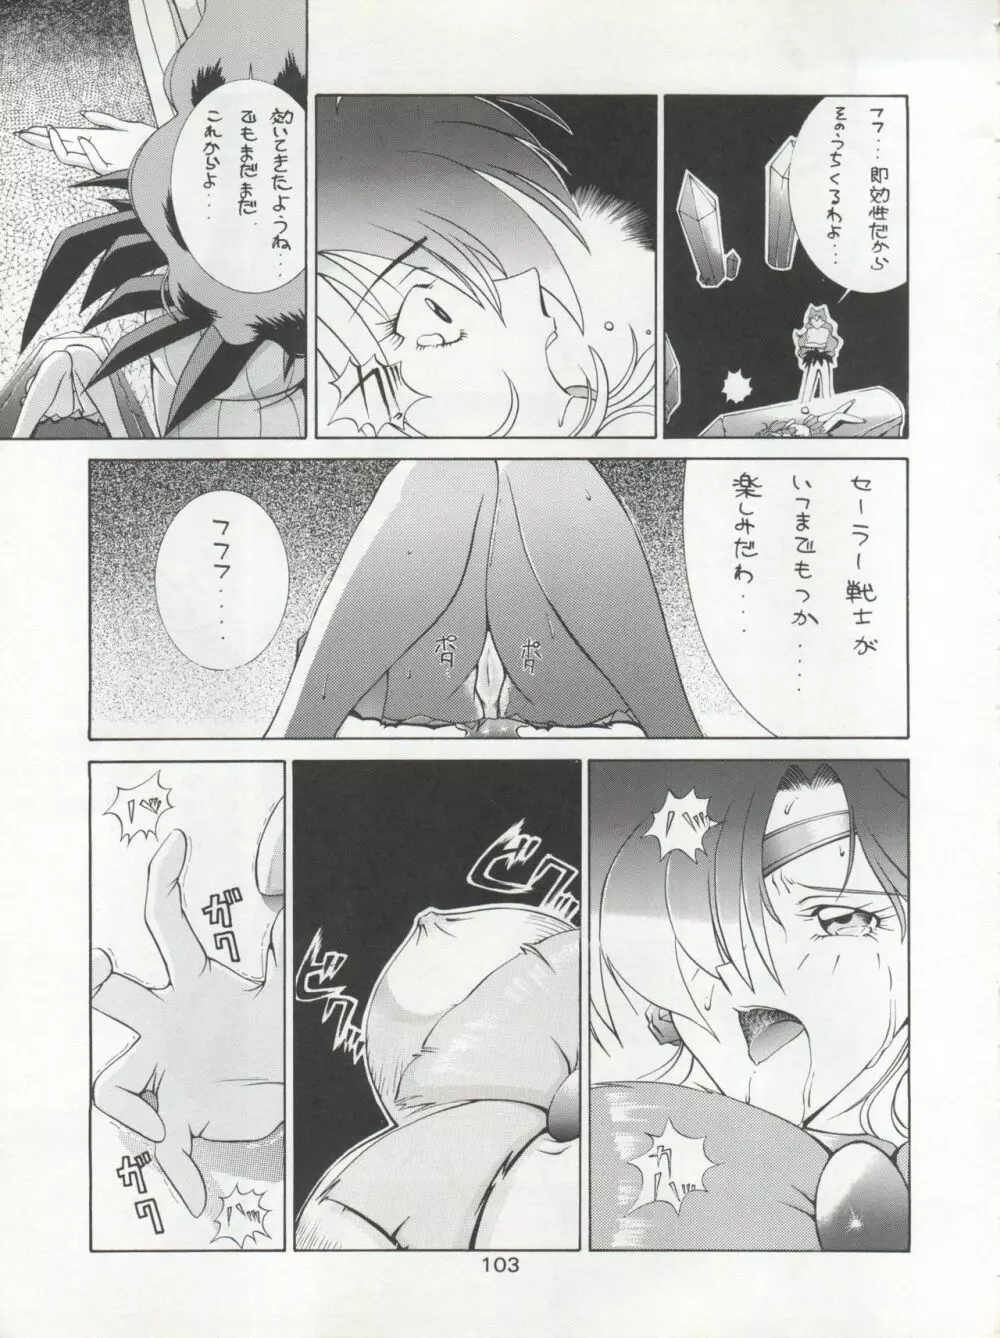 KATZE 7 上巻 - page104